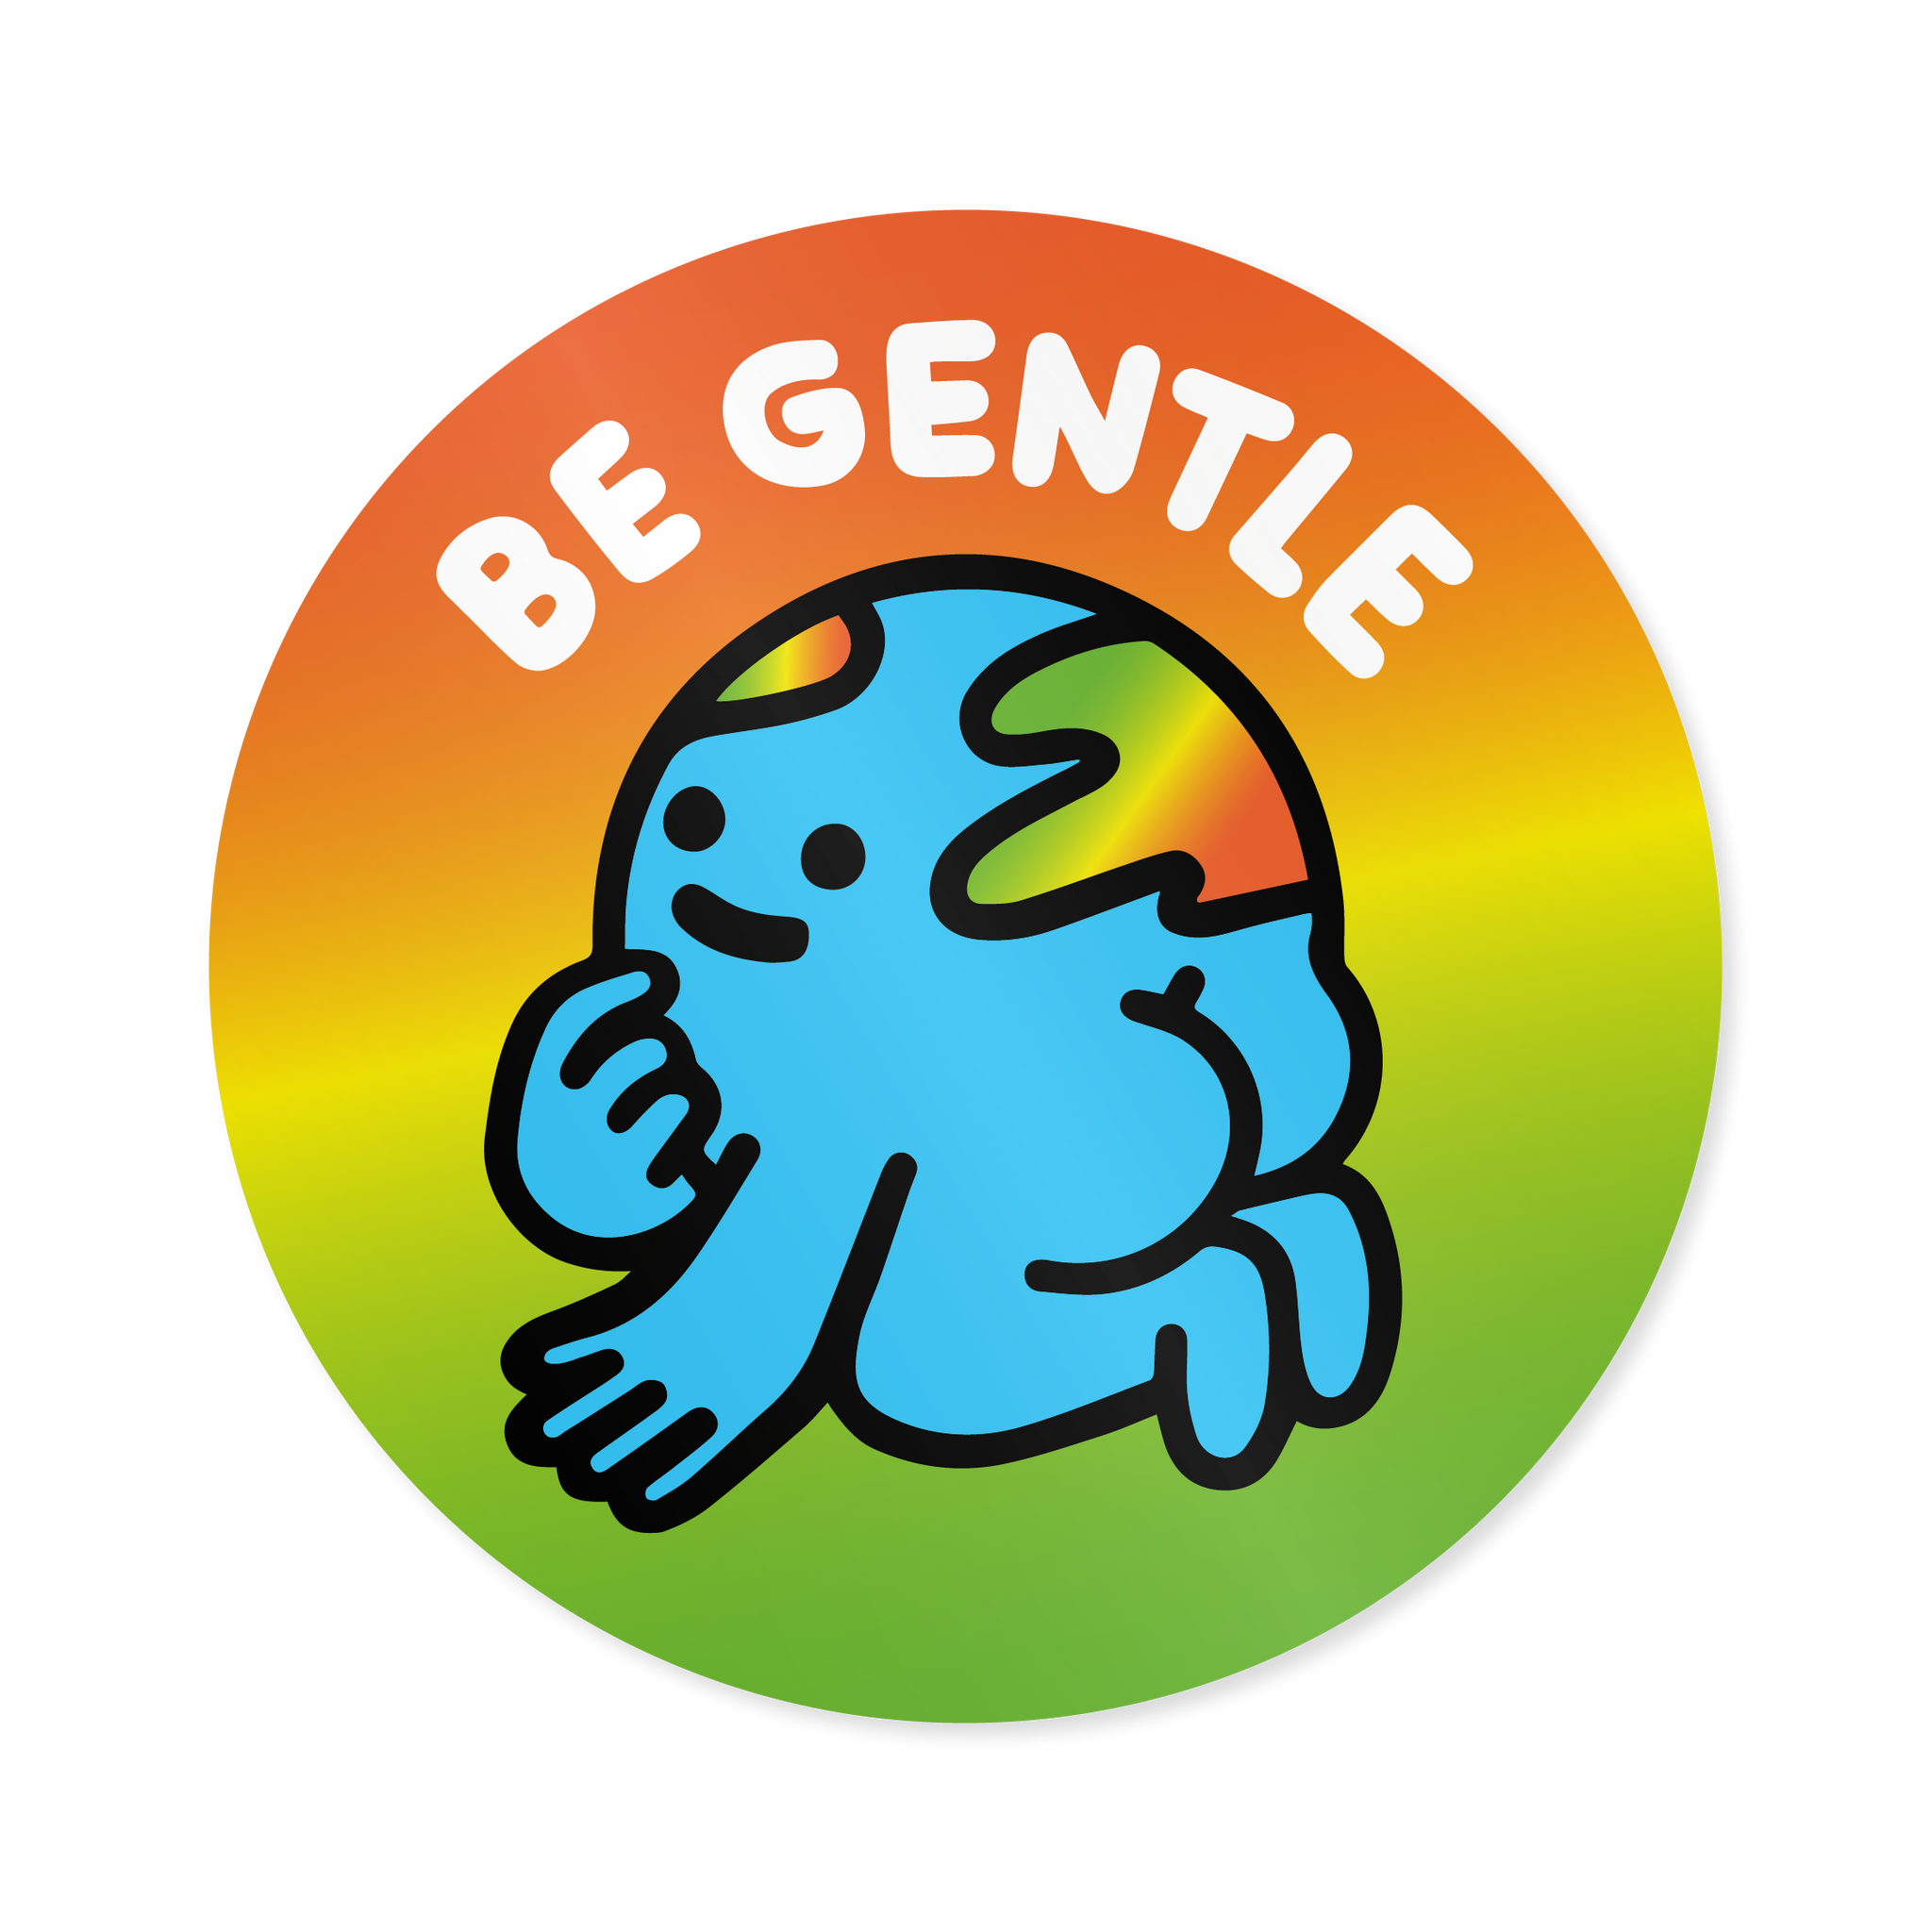 'Be Gentle' Earth  - Vinyl Sticker